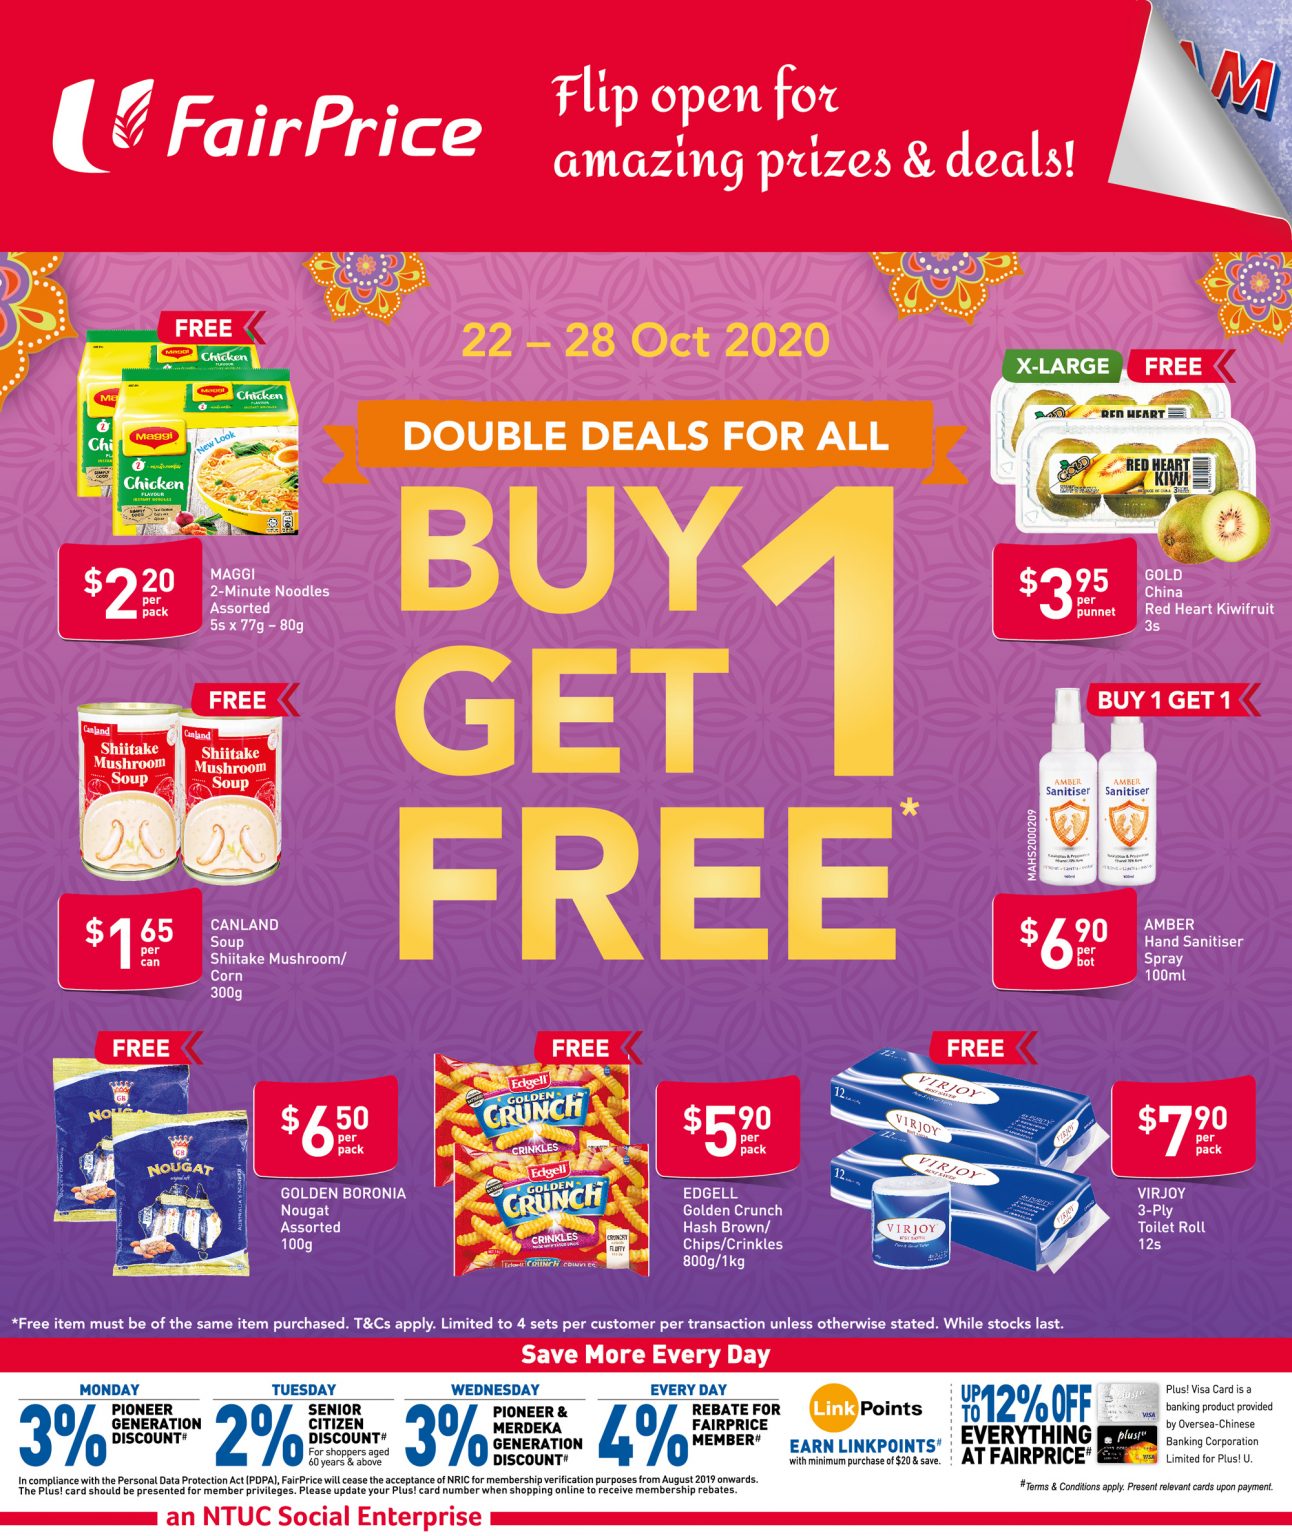 FairPrice buy-1-get-1-free deals from 22 - 28 October 2020